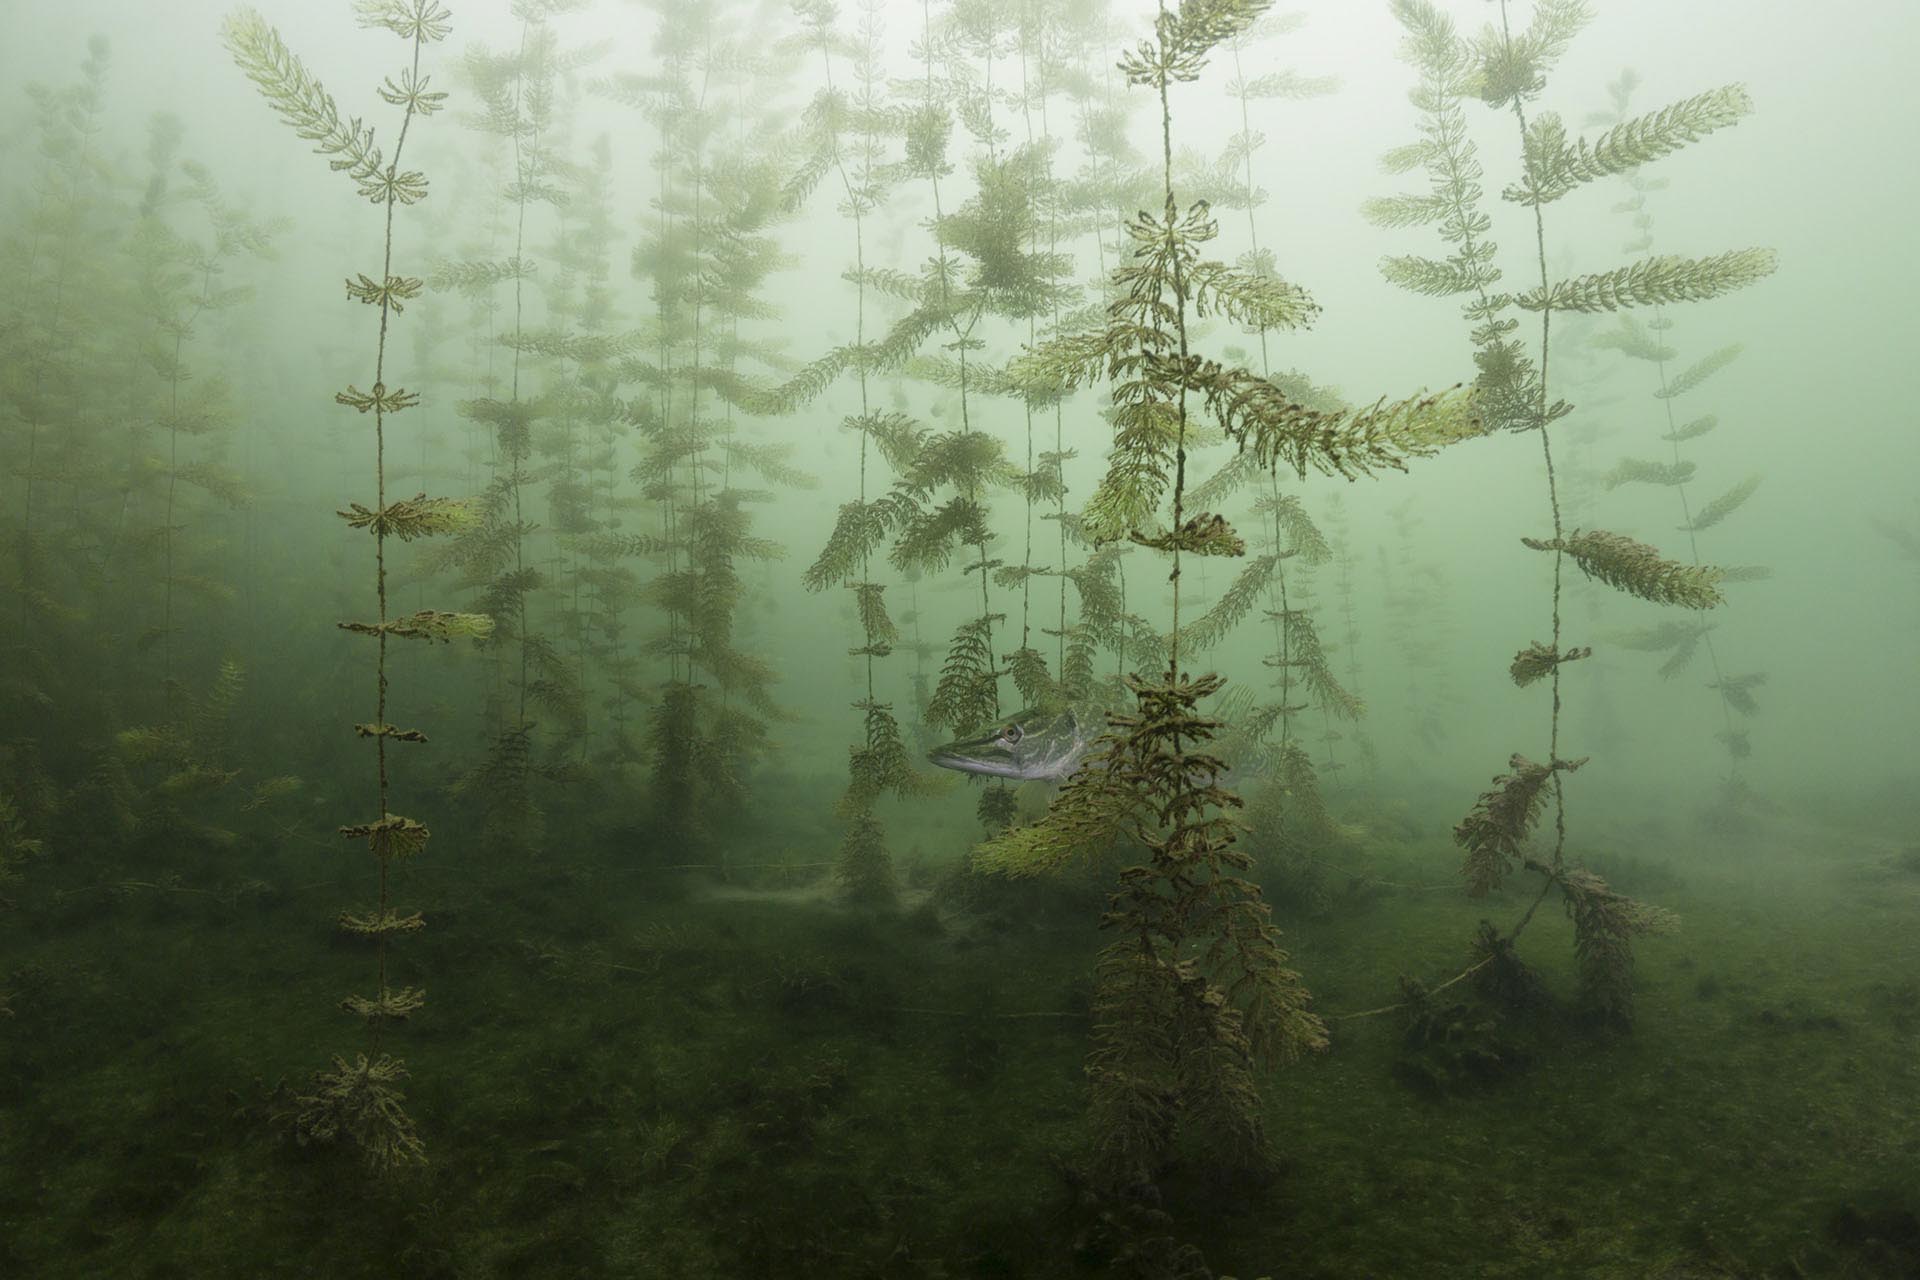 fotografía ganadora de la categoría Submarina del Fotógrafo de Naturaleza del año, “En el escondite” foto de Miloš Prelević, Serbia.